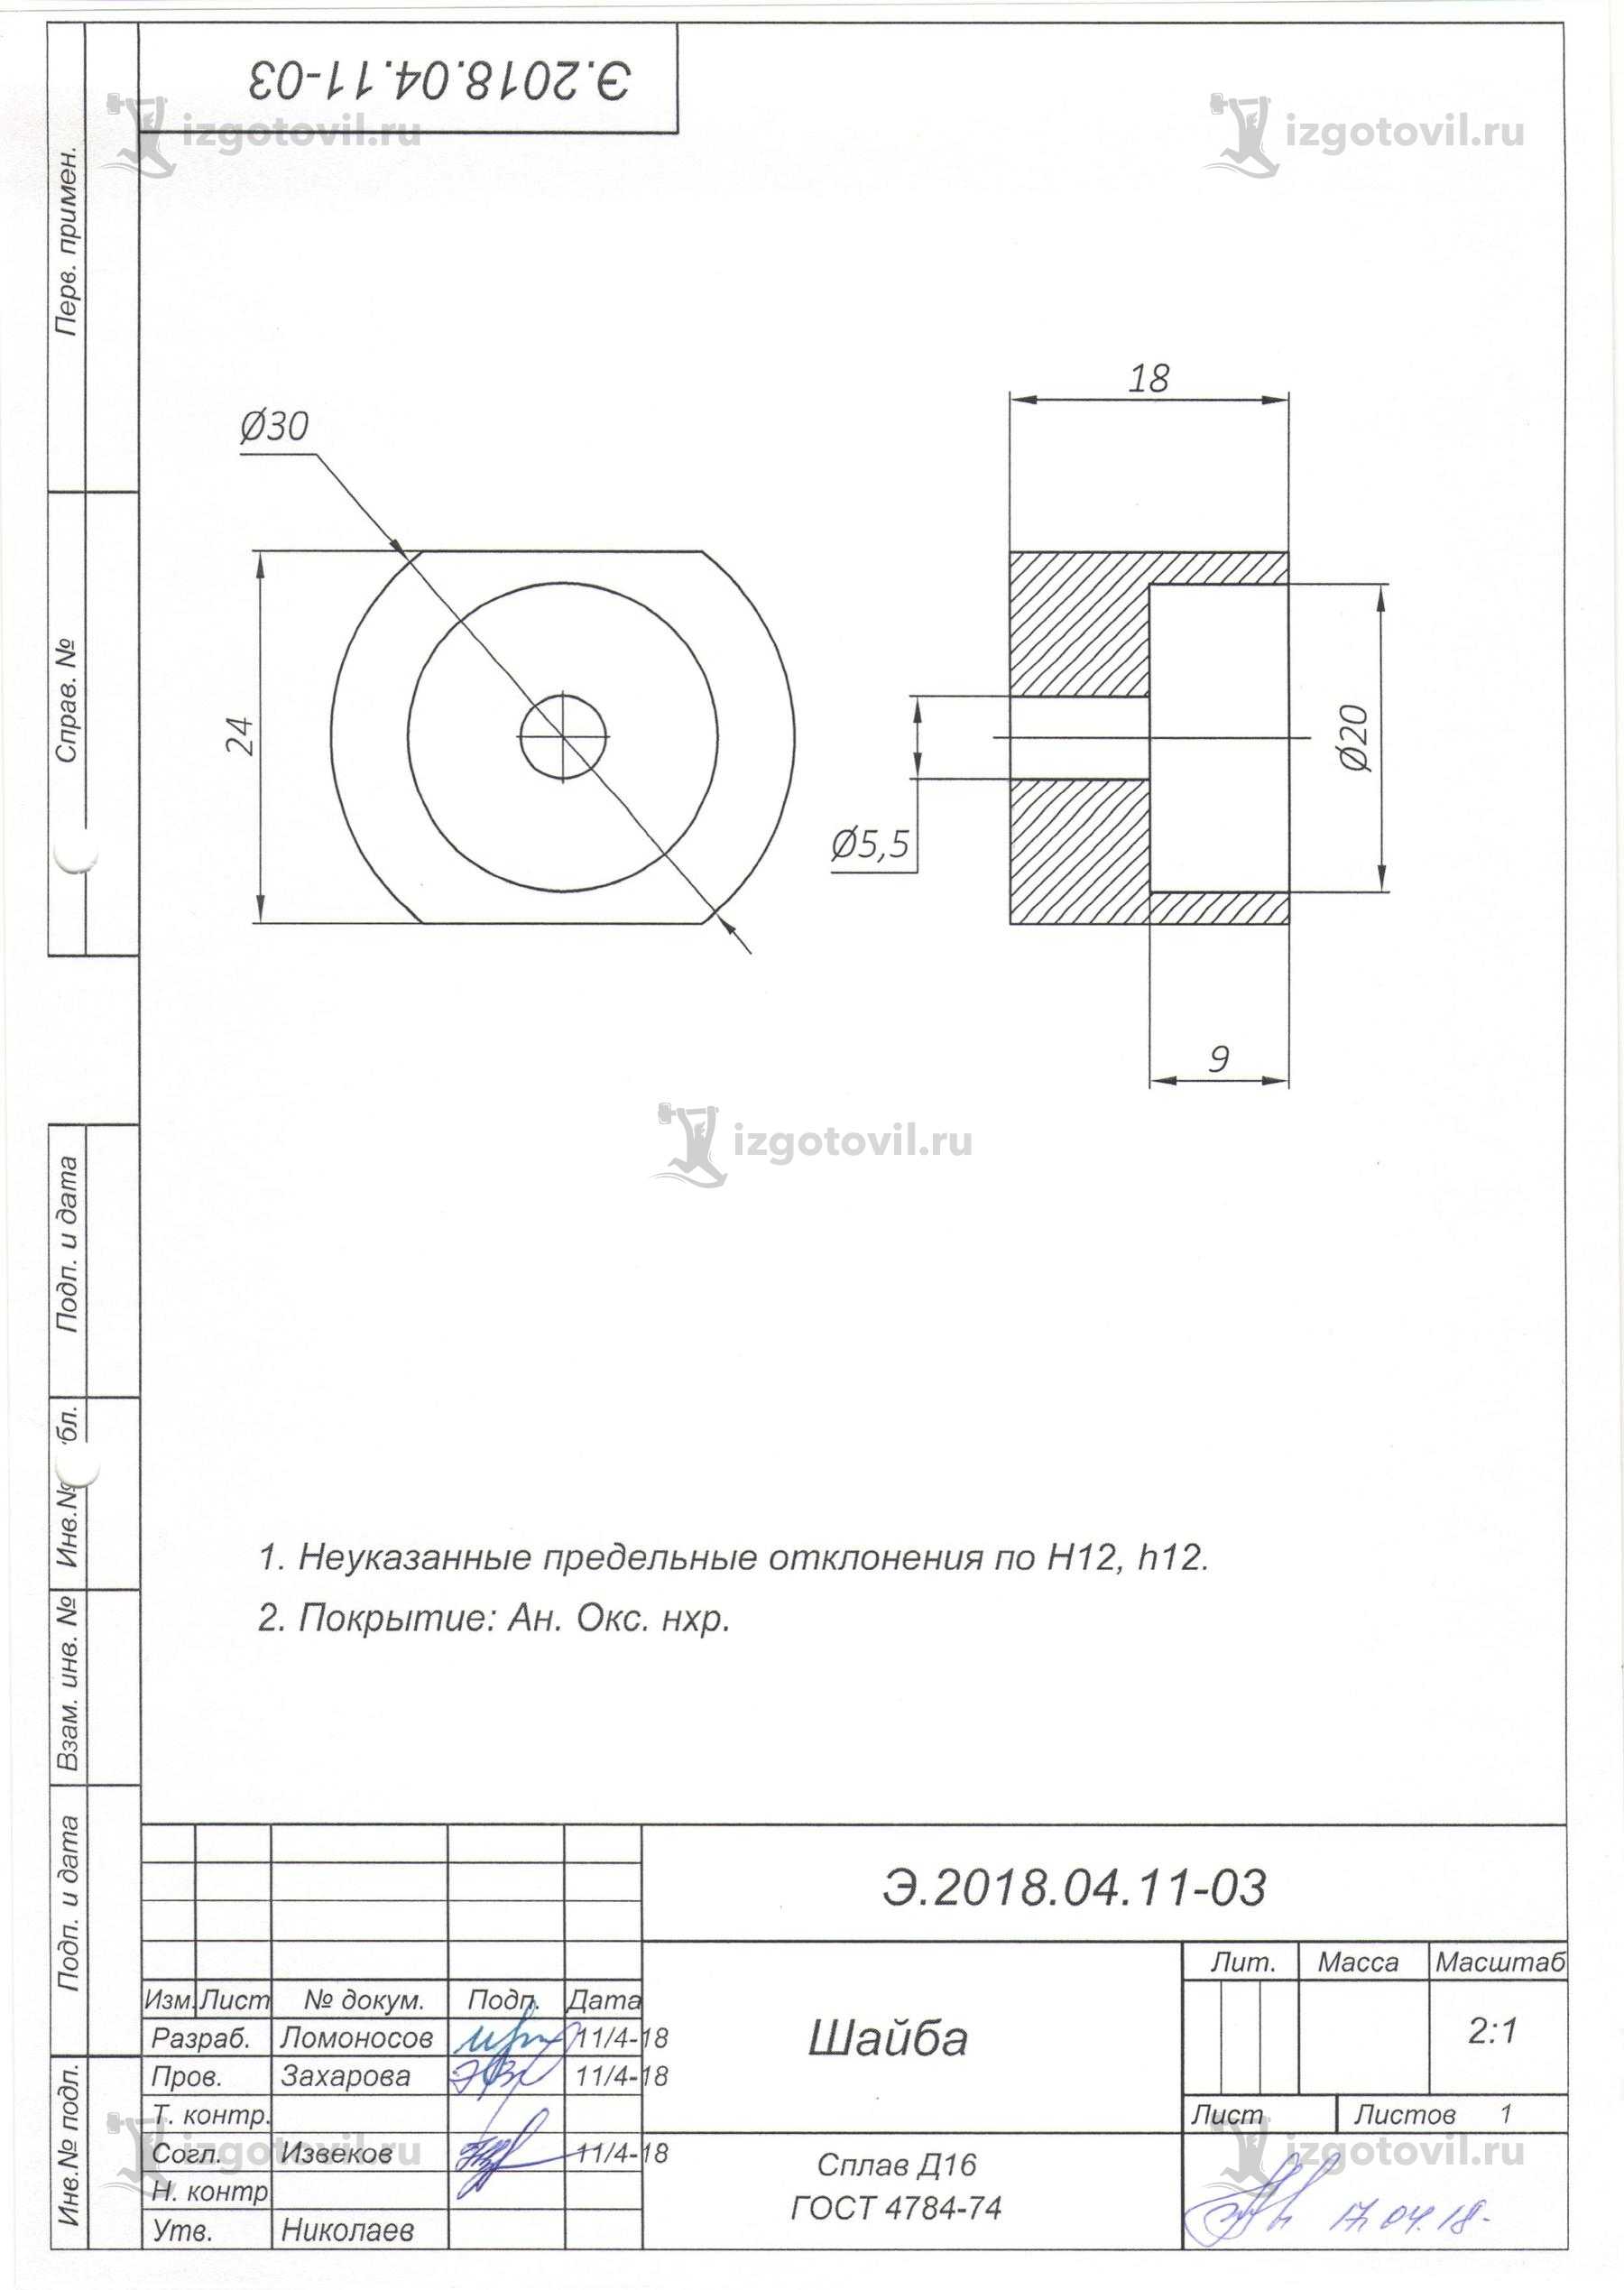 Изготовление деталей по чертежам (комплекта деталей прибора ТС-1).